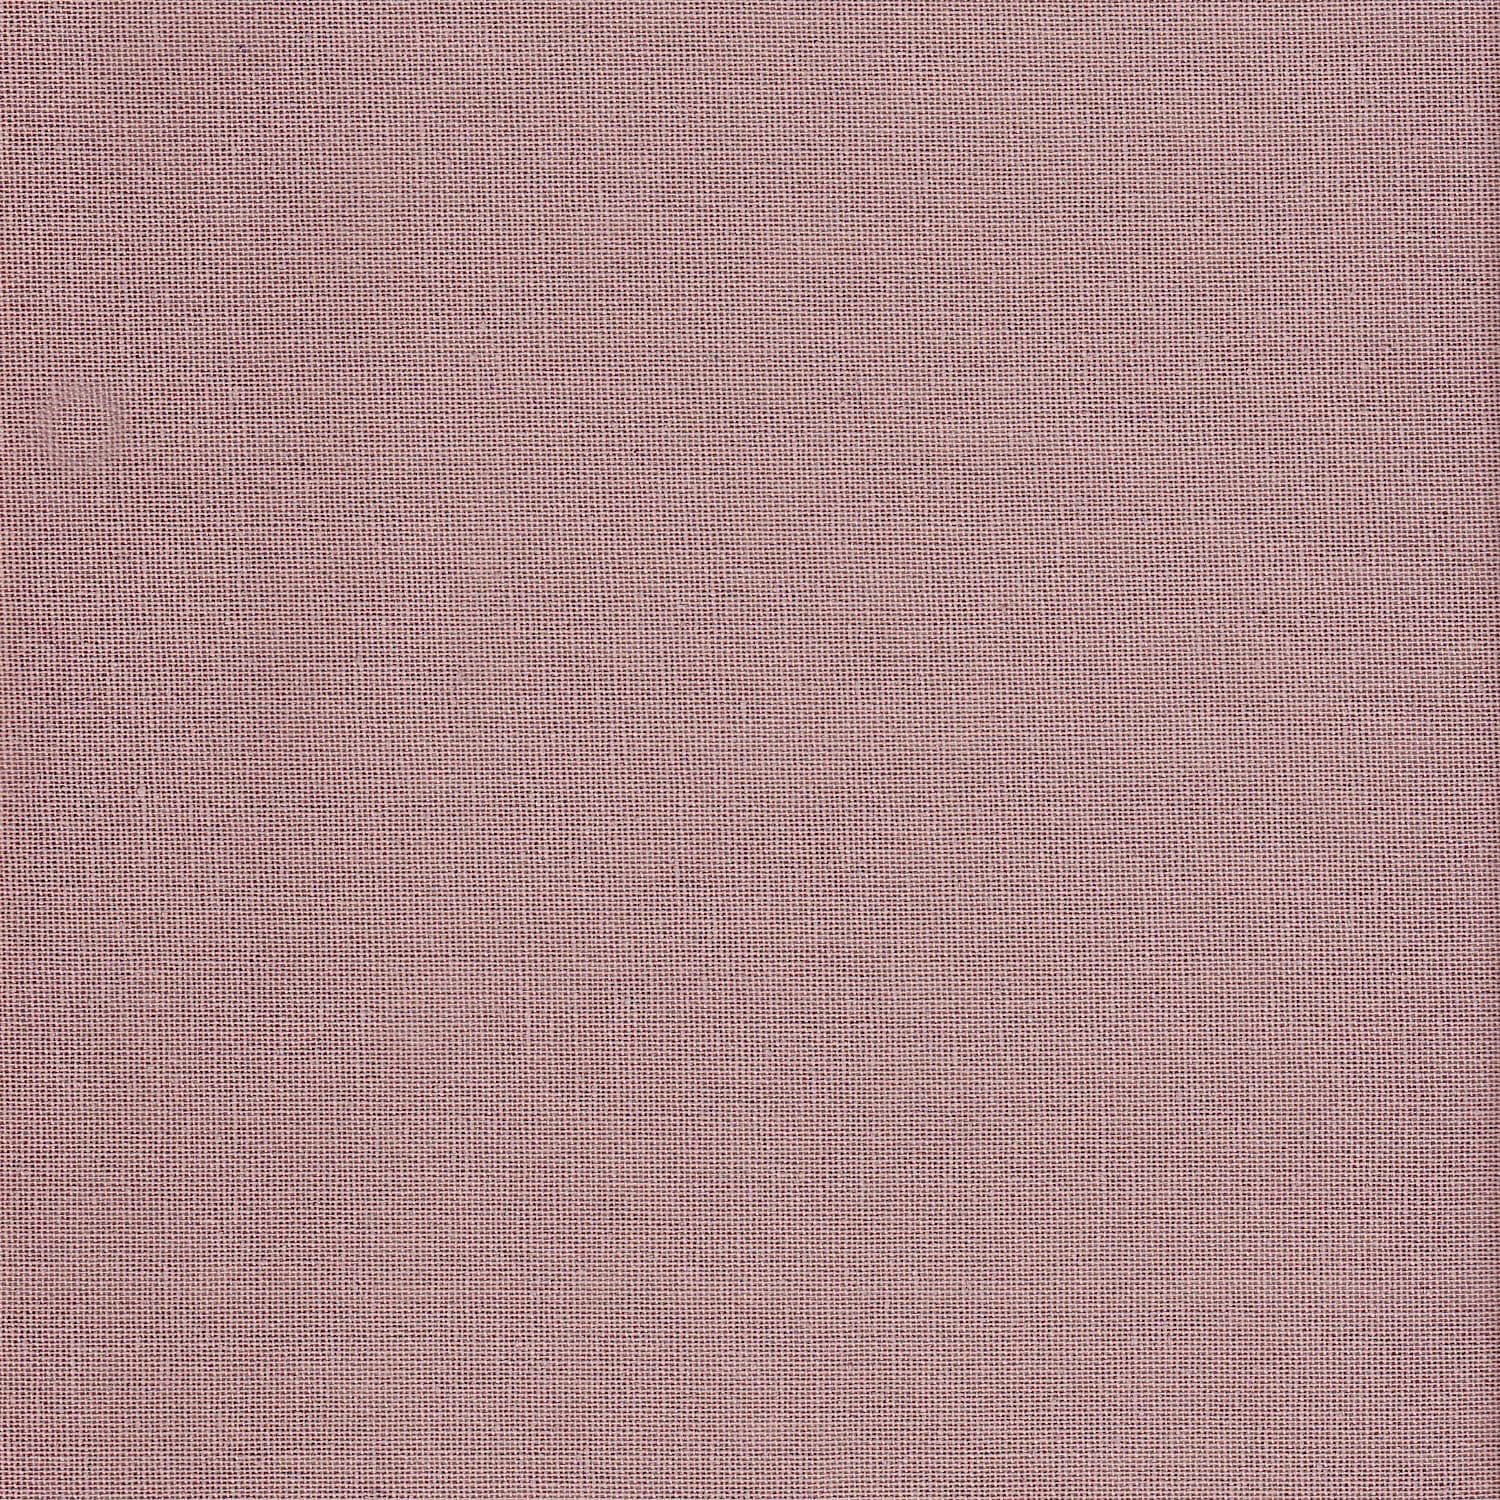 Numero 74 - Wall pocket - Dusty Pink - S007